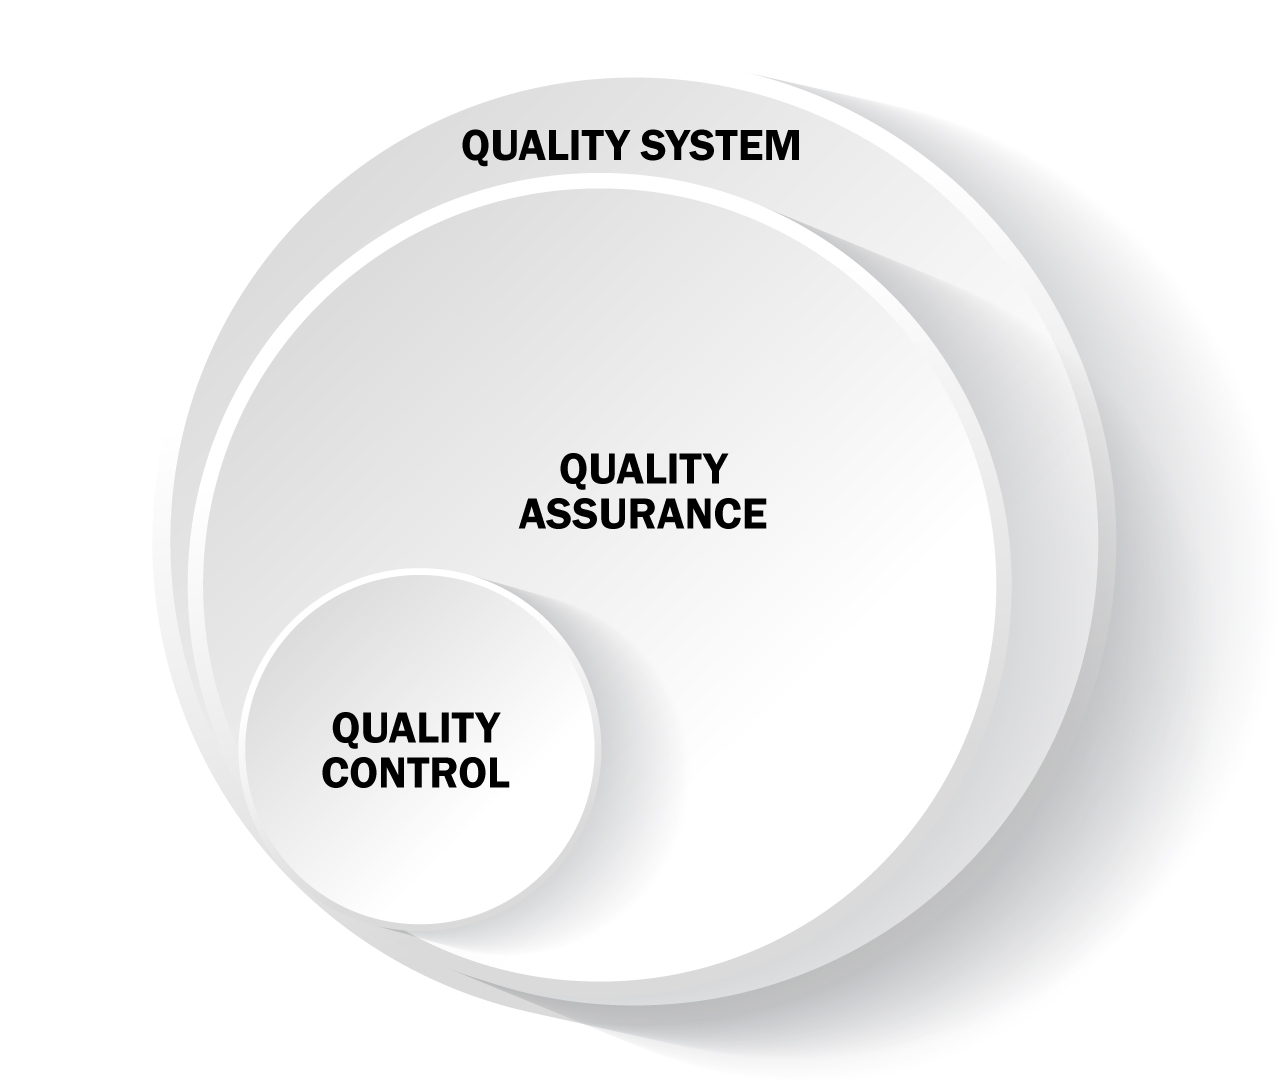 Diferencias entre los tres conceptos, control de calidad, garantía de calidad y sistemas de calidad